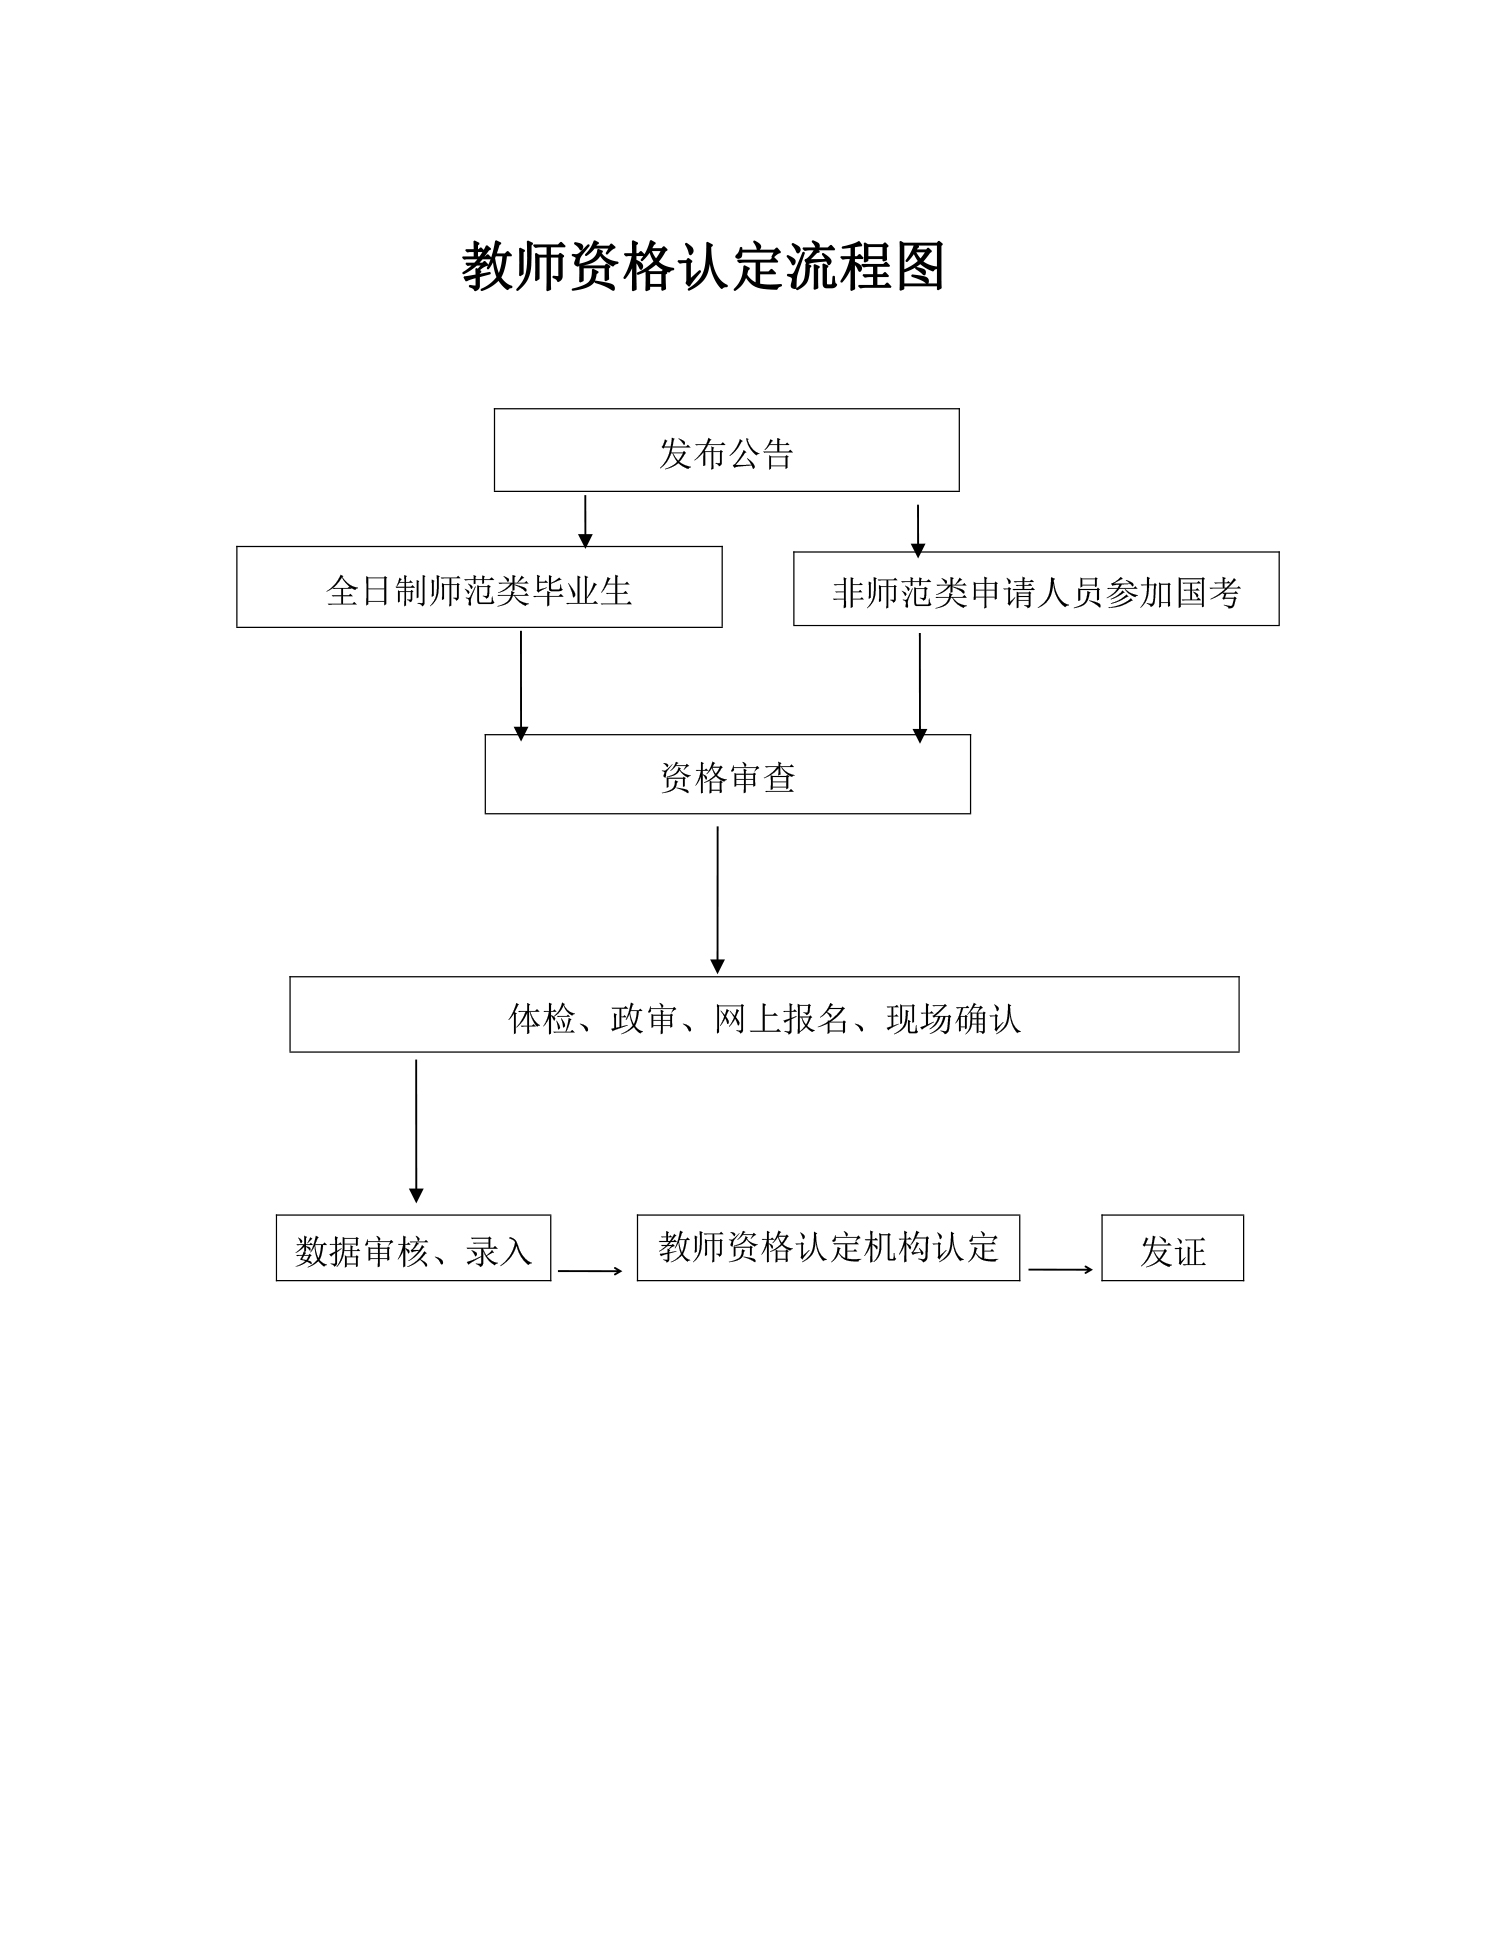 开封市教育局行政职权运行流程图-4.jpg